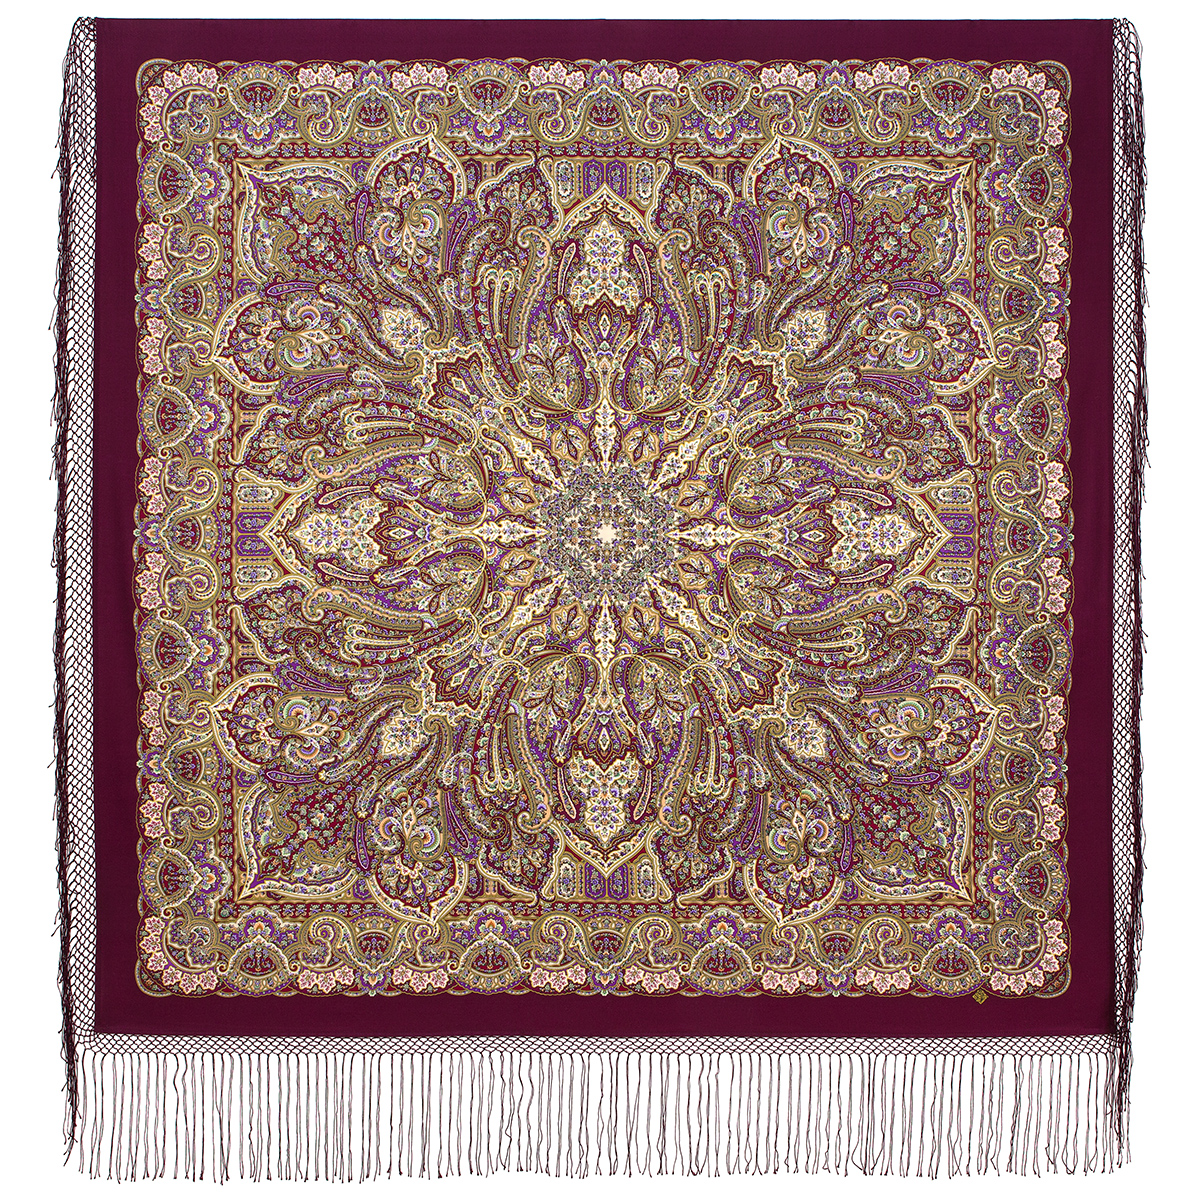 Платок женский Павловопосадский платок 1857 бордовый/сиреневый, 148х148 см